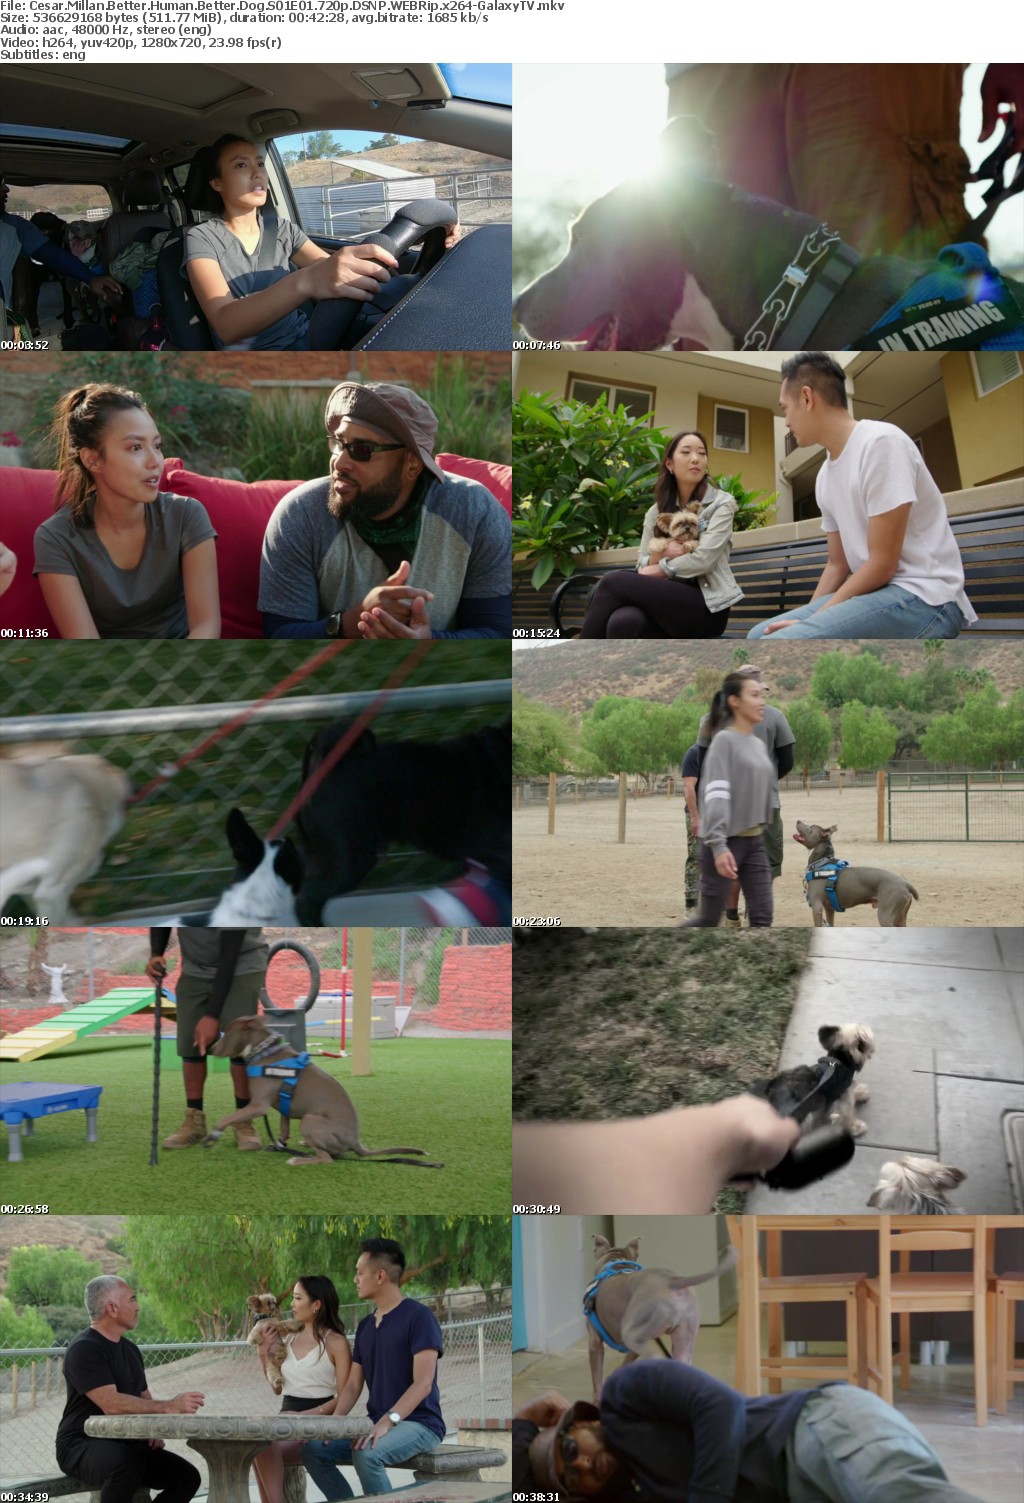 Cesar Millan Better Human Better Dog S01 COMPLETE 720p DSNP WEBRip x264-GalaxyTV